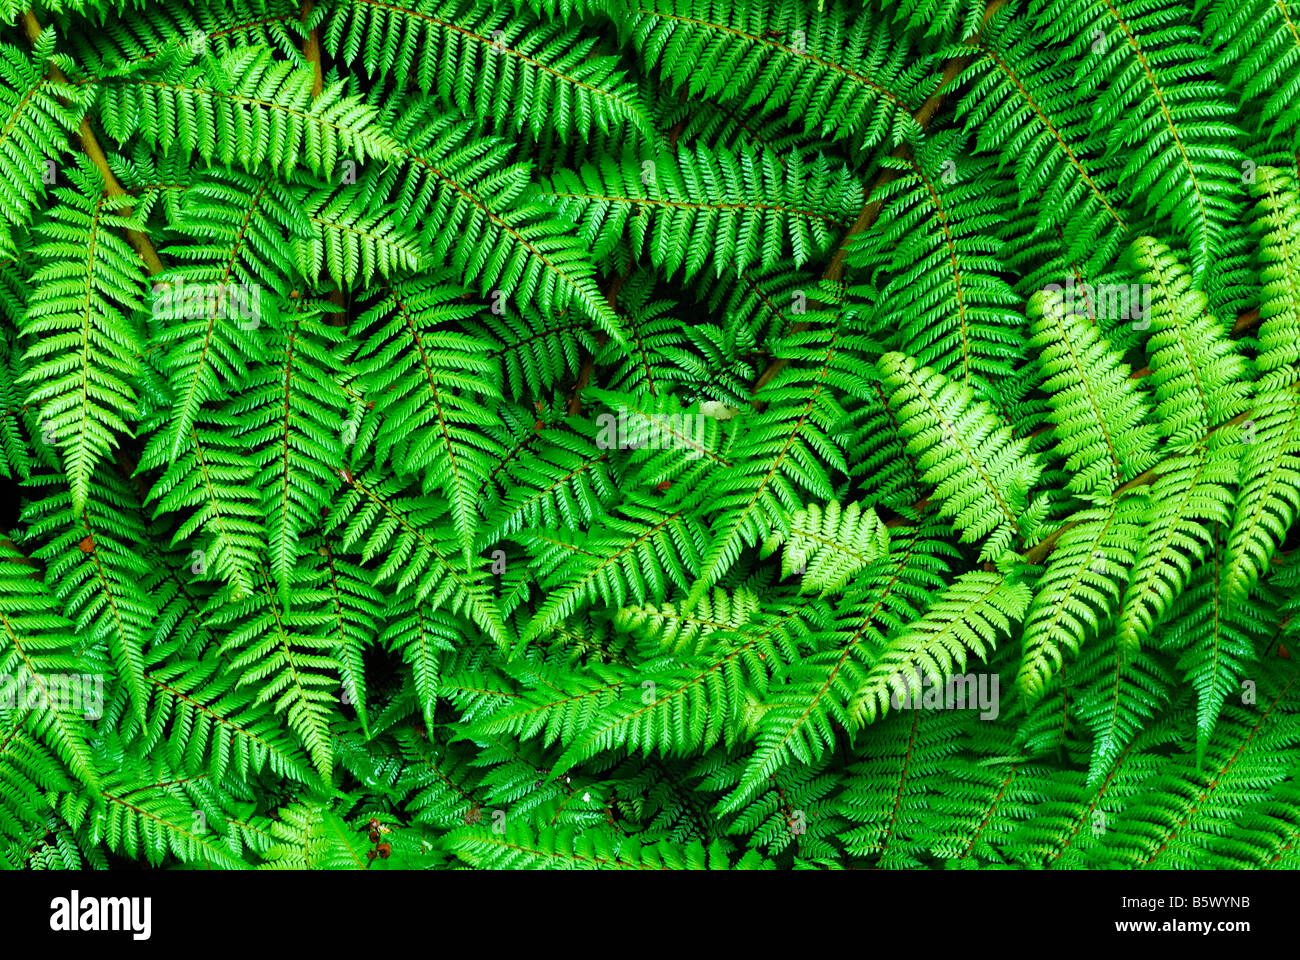 fern leaves, Fiordland National Park, World Heritage South West New Zealand, West Coast, South Island, New Zealand, February Stock Photo